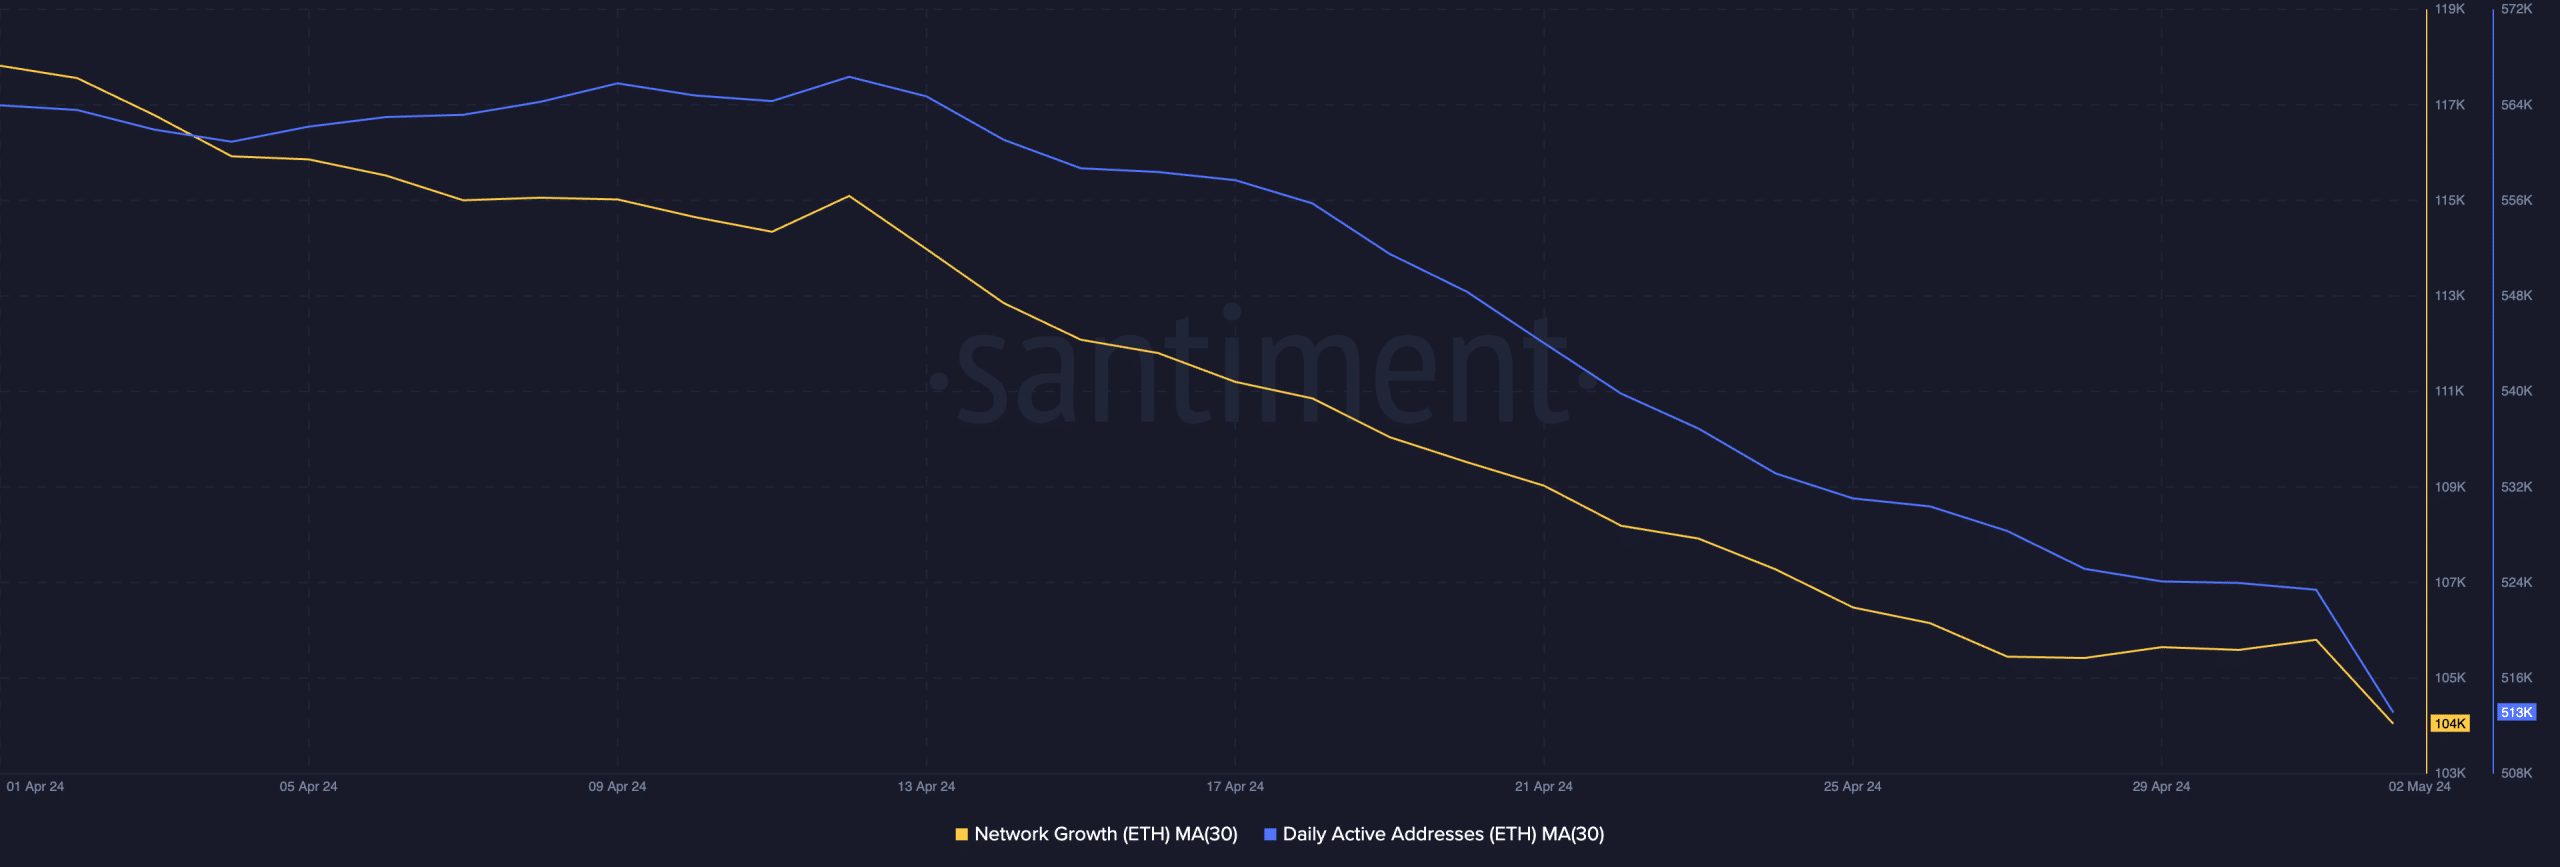 Czy Ethereum spadnie w maju poniżej 2500 dolarów? Przyjrzyjmy się bliżej